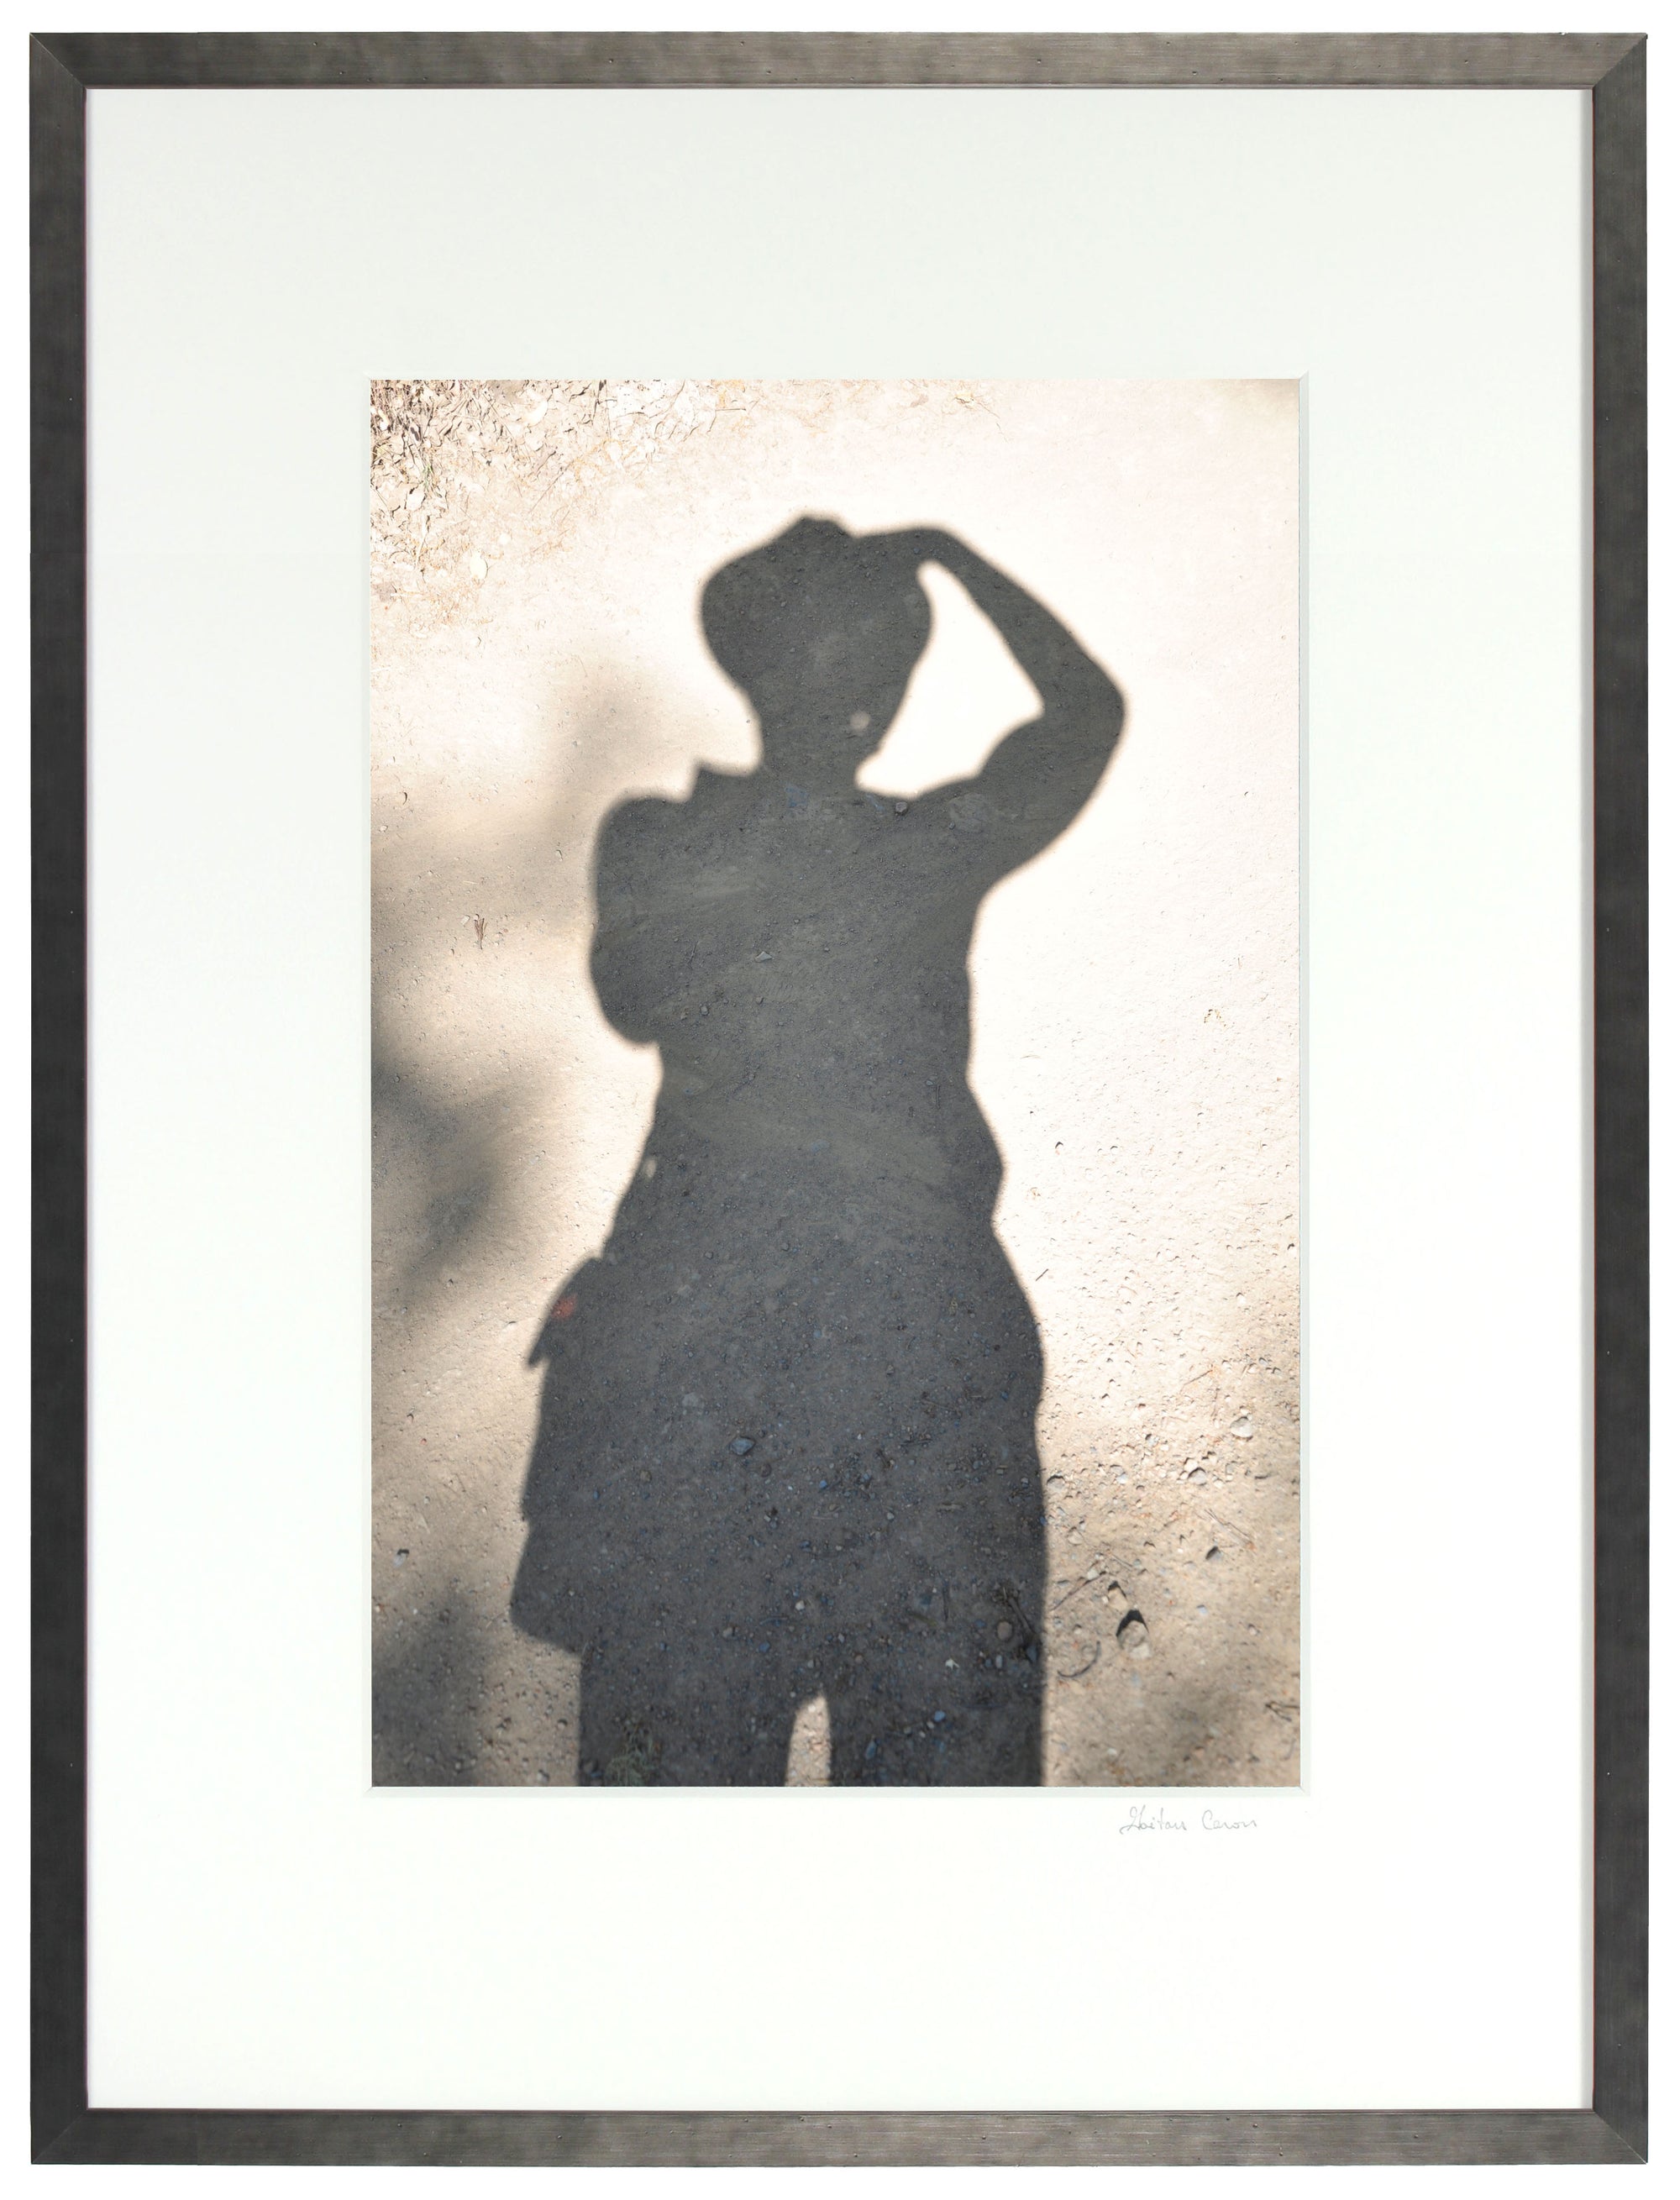 <I>Auto-Portrait sur Argile (Self Portrait in Clay)</I><br>Mendocino, California, 2012<br><br>GC0294